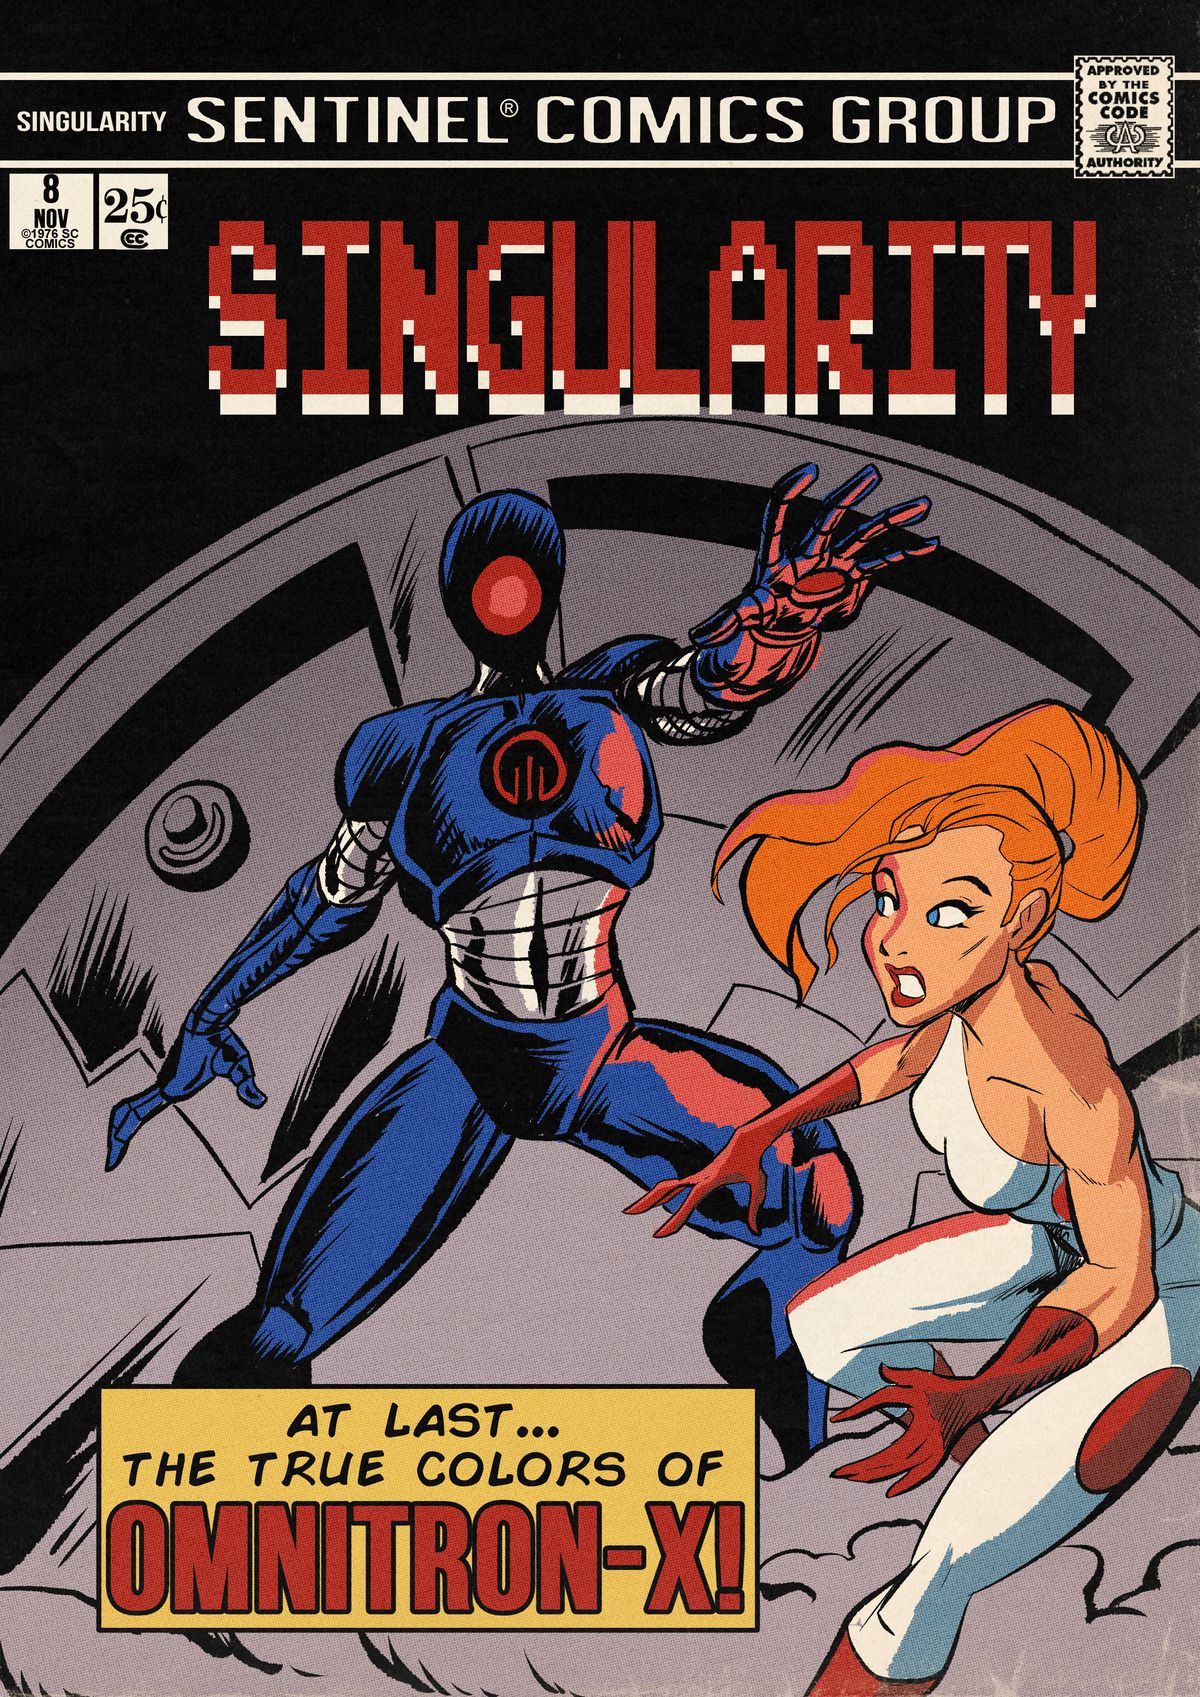 La copertina della serie Sentinel Comics Singularity mostra un robot davanti a una porta del caveau, una donna supereroe in bianco pronta a combatterli.